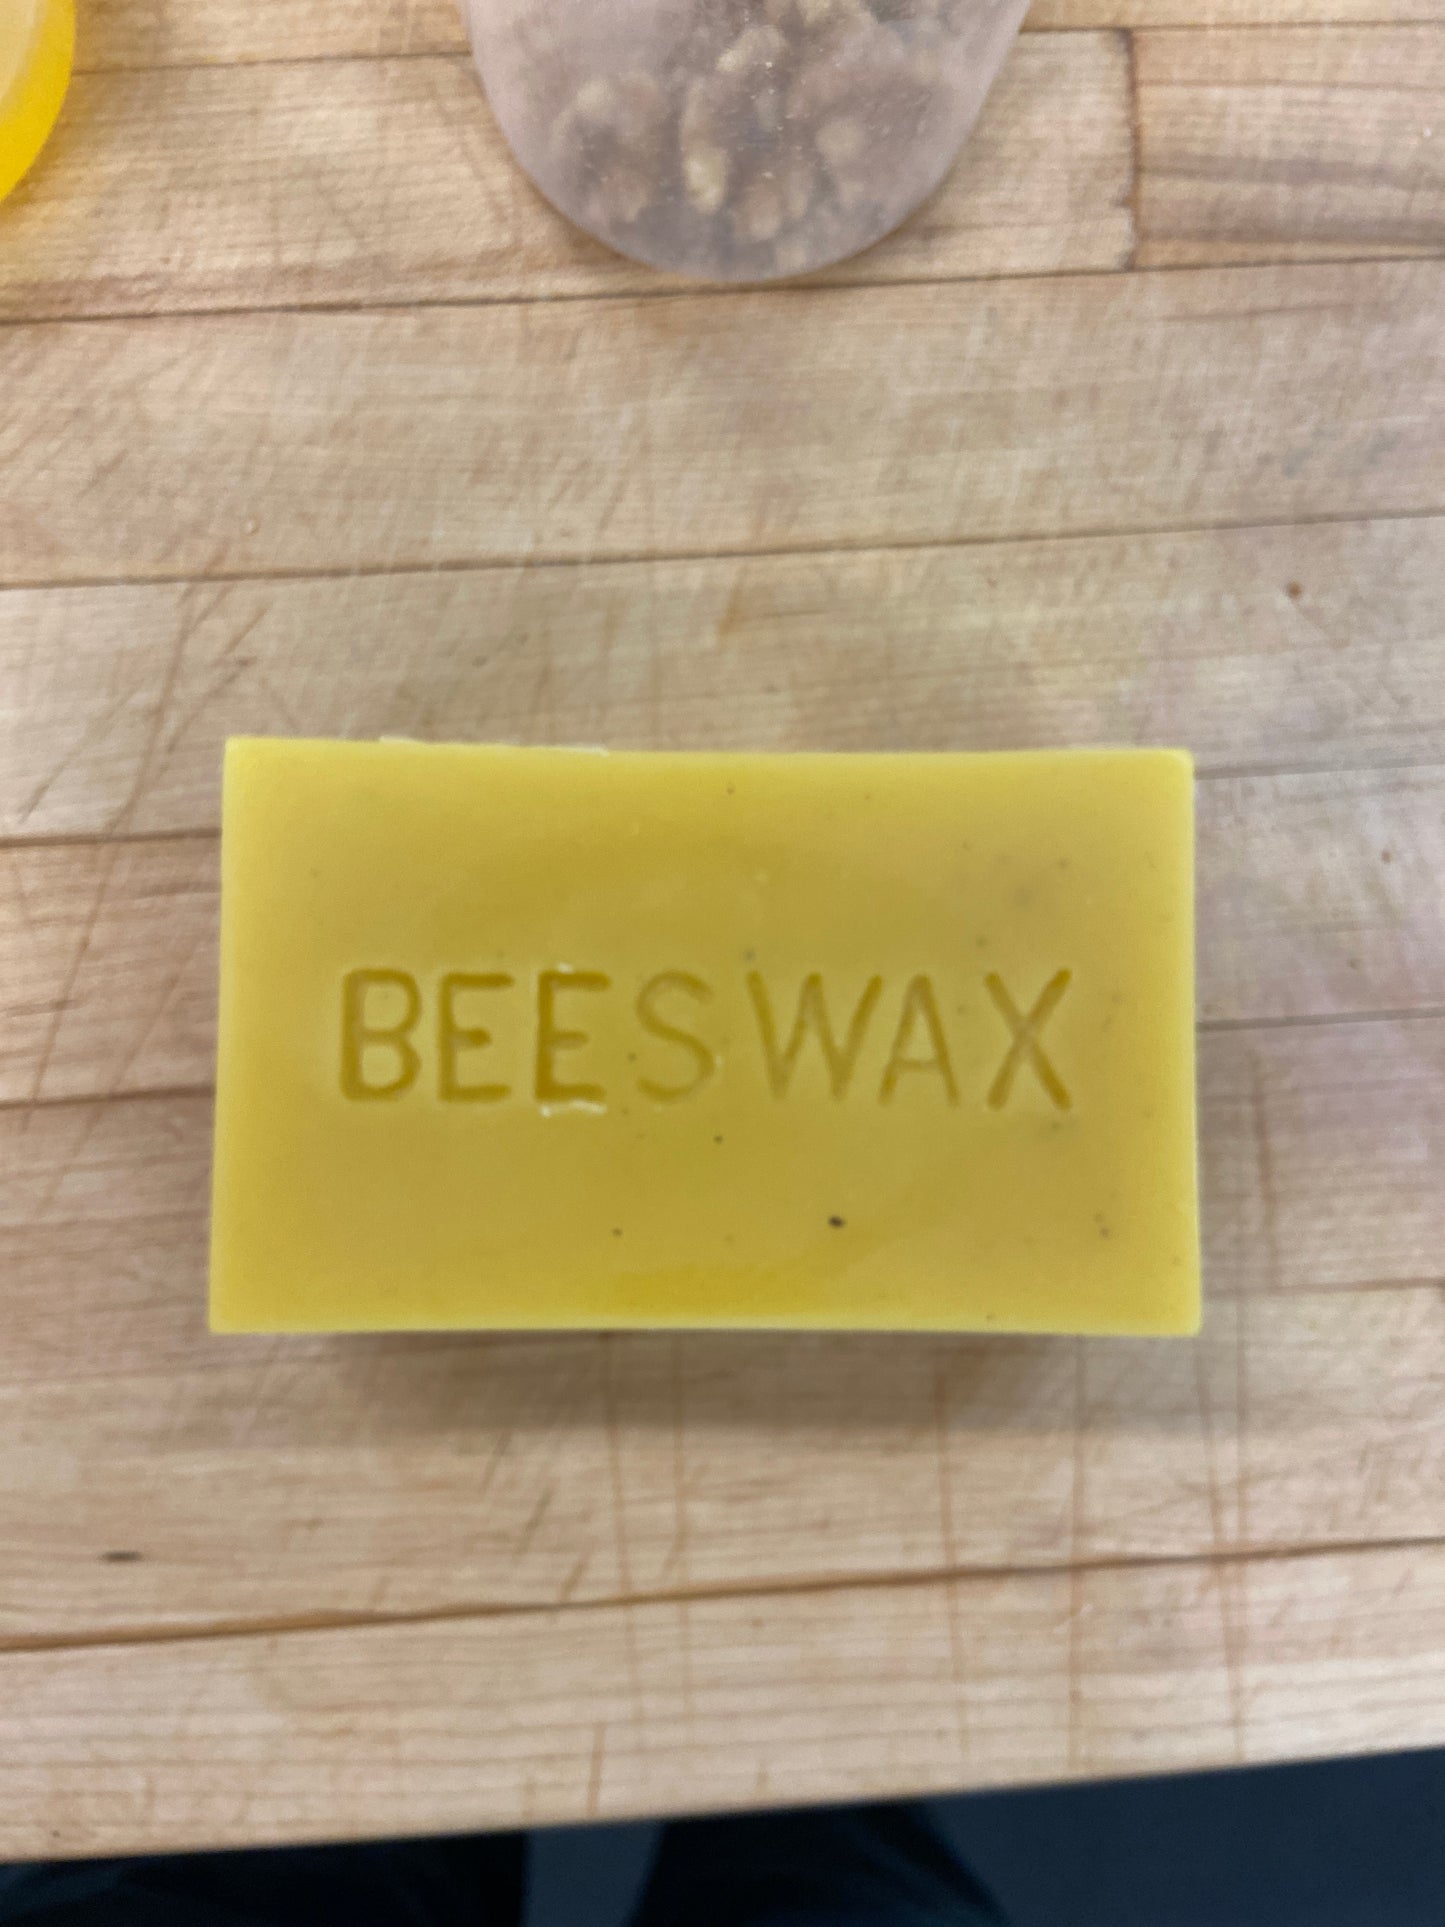 Bees Wax 1lb brick